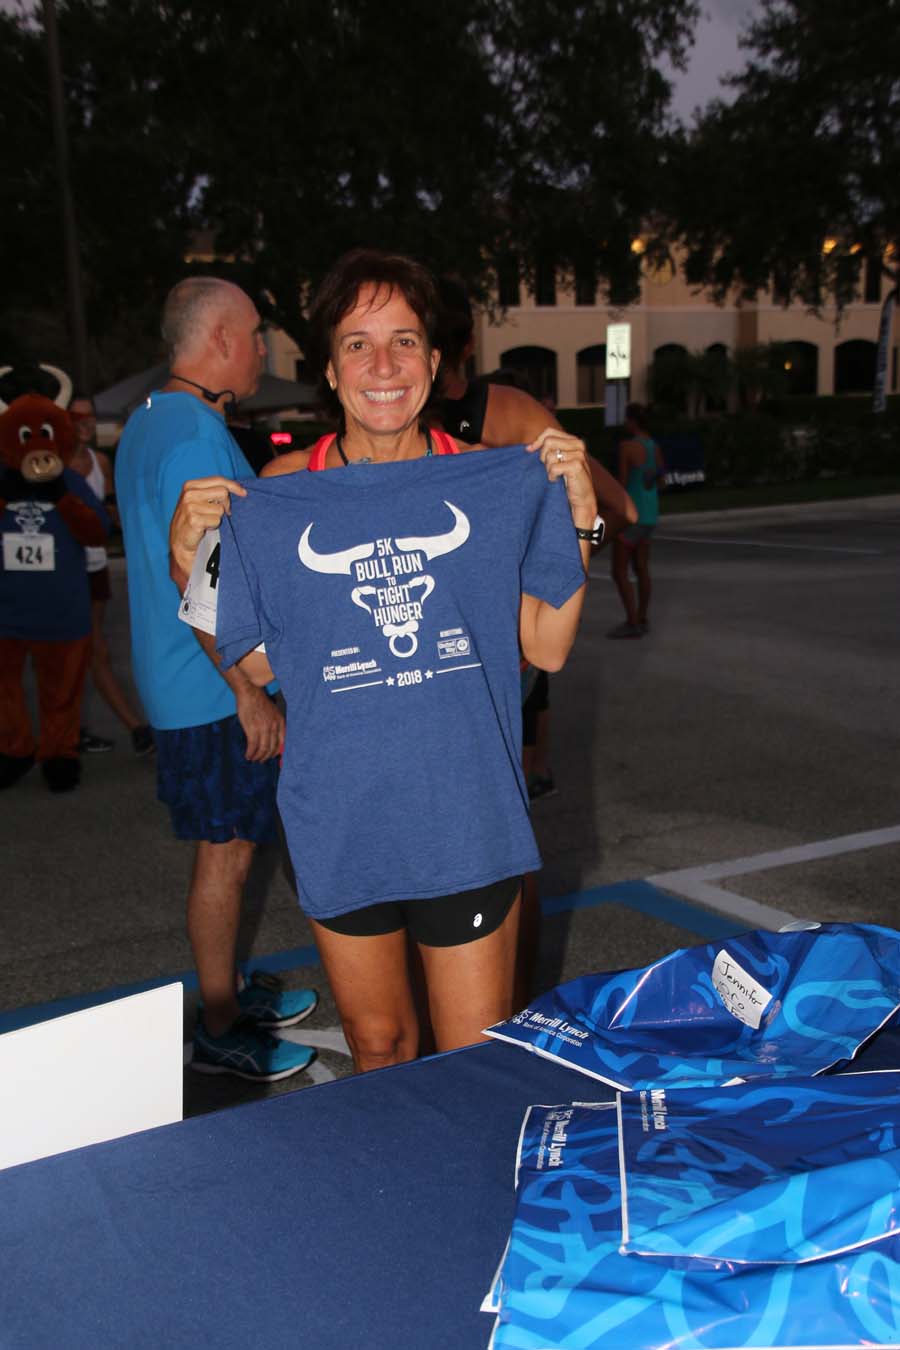 Volunteer holding Bull Run shirt